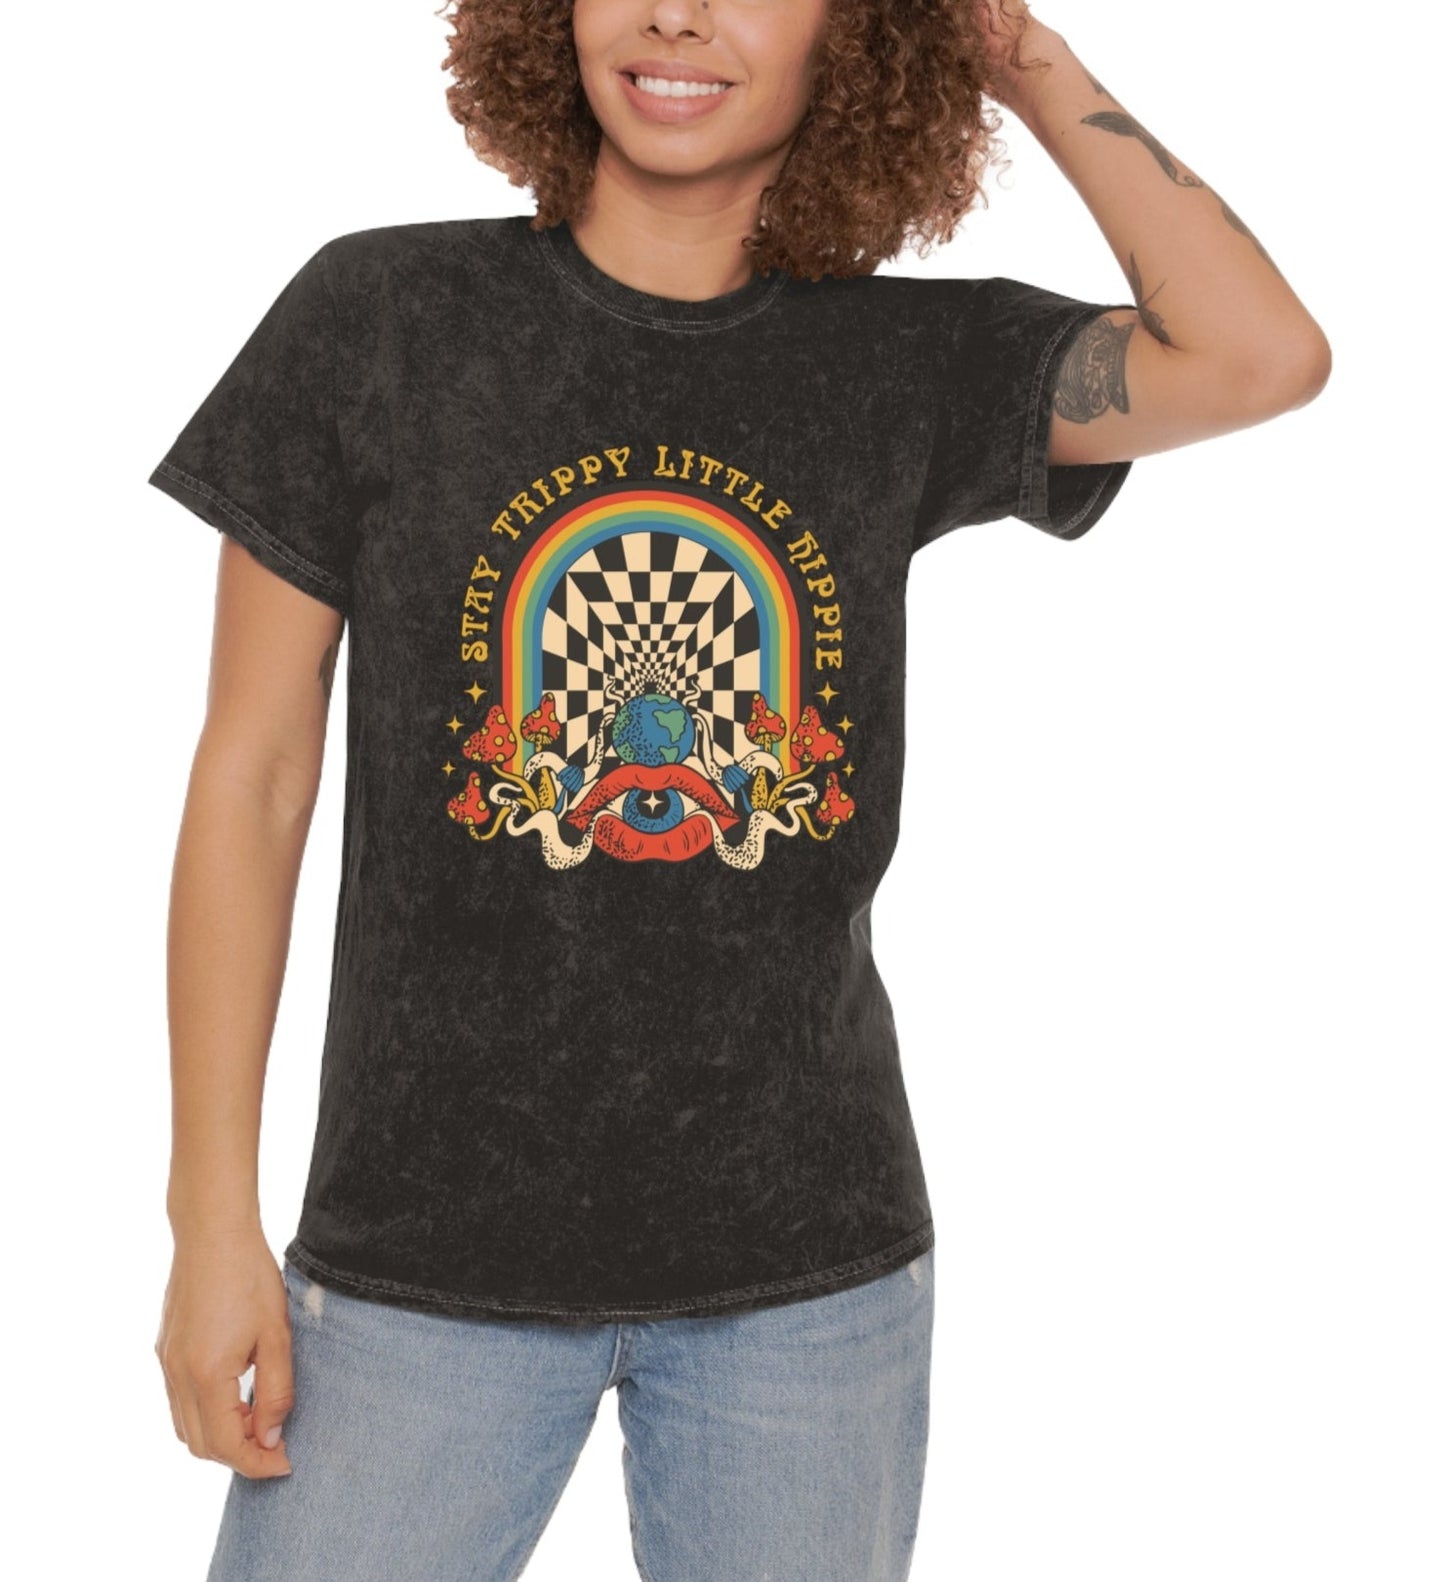 Stay trippy little hippie Unisex T-Shirt